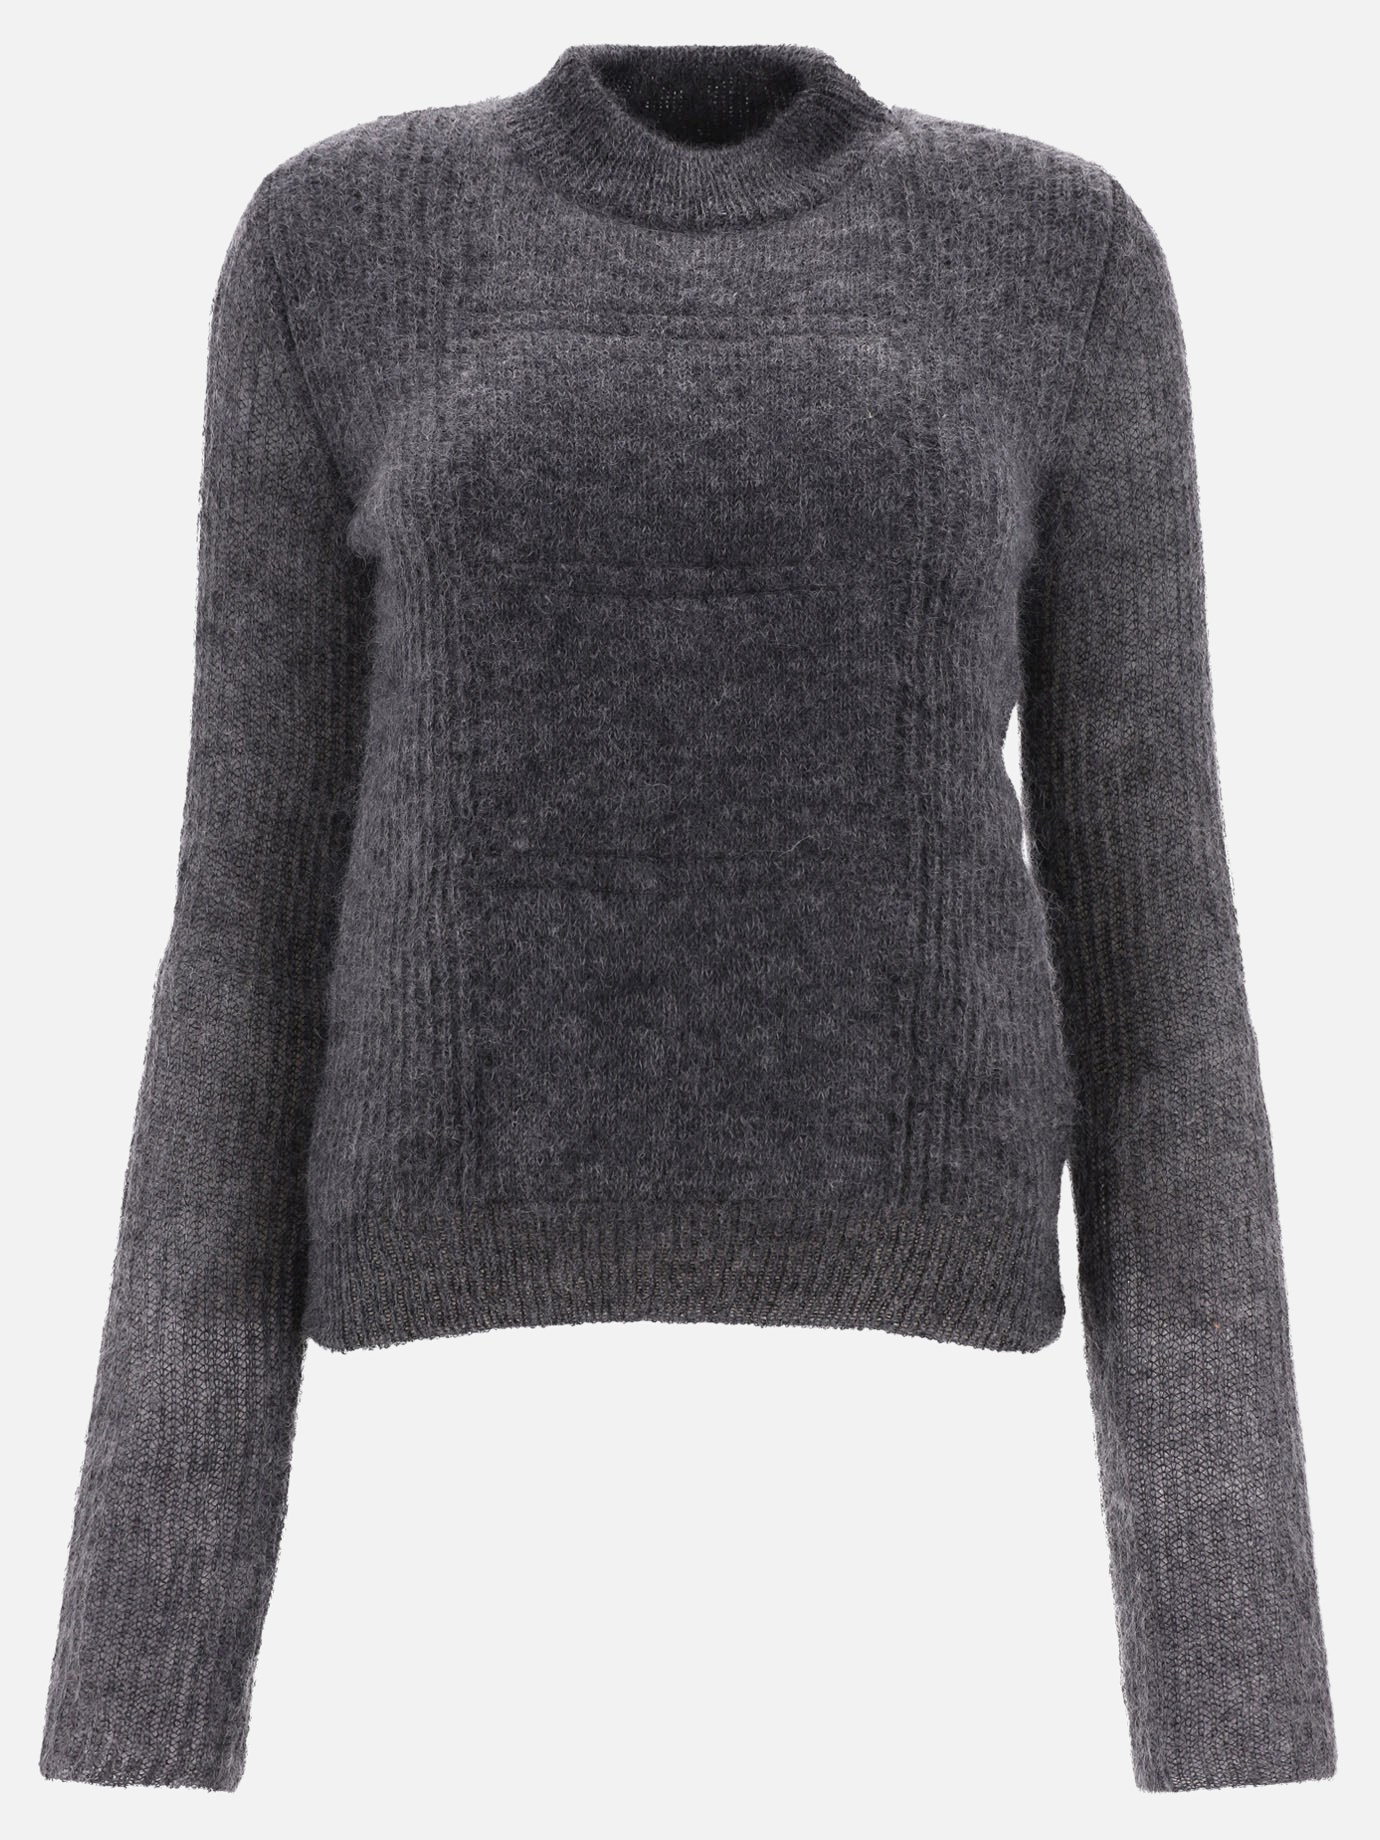  Fiocchi  sweaterby Max Mara - 5